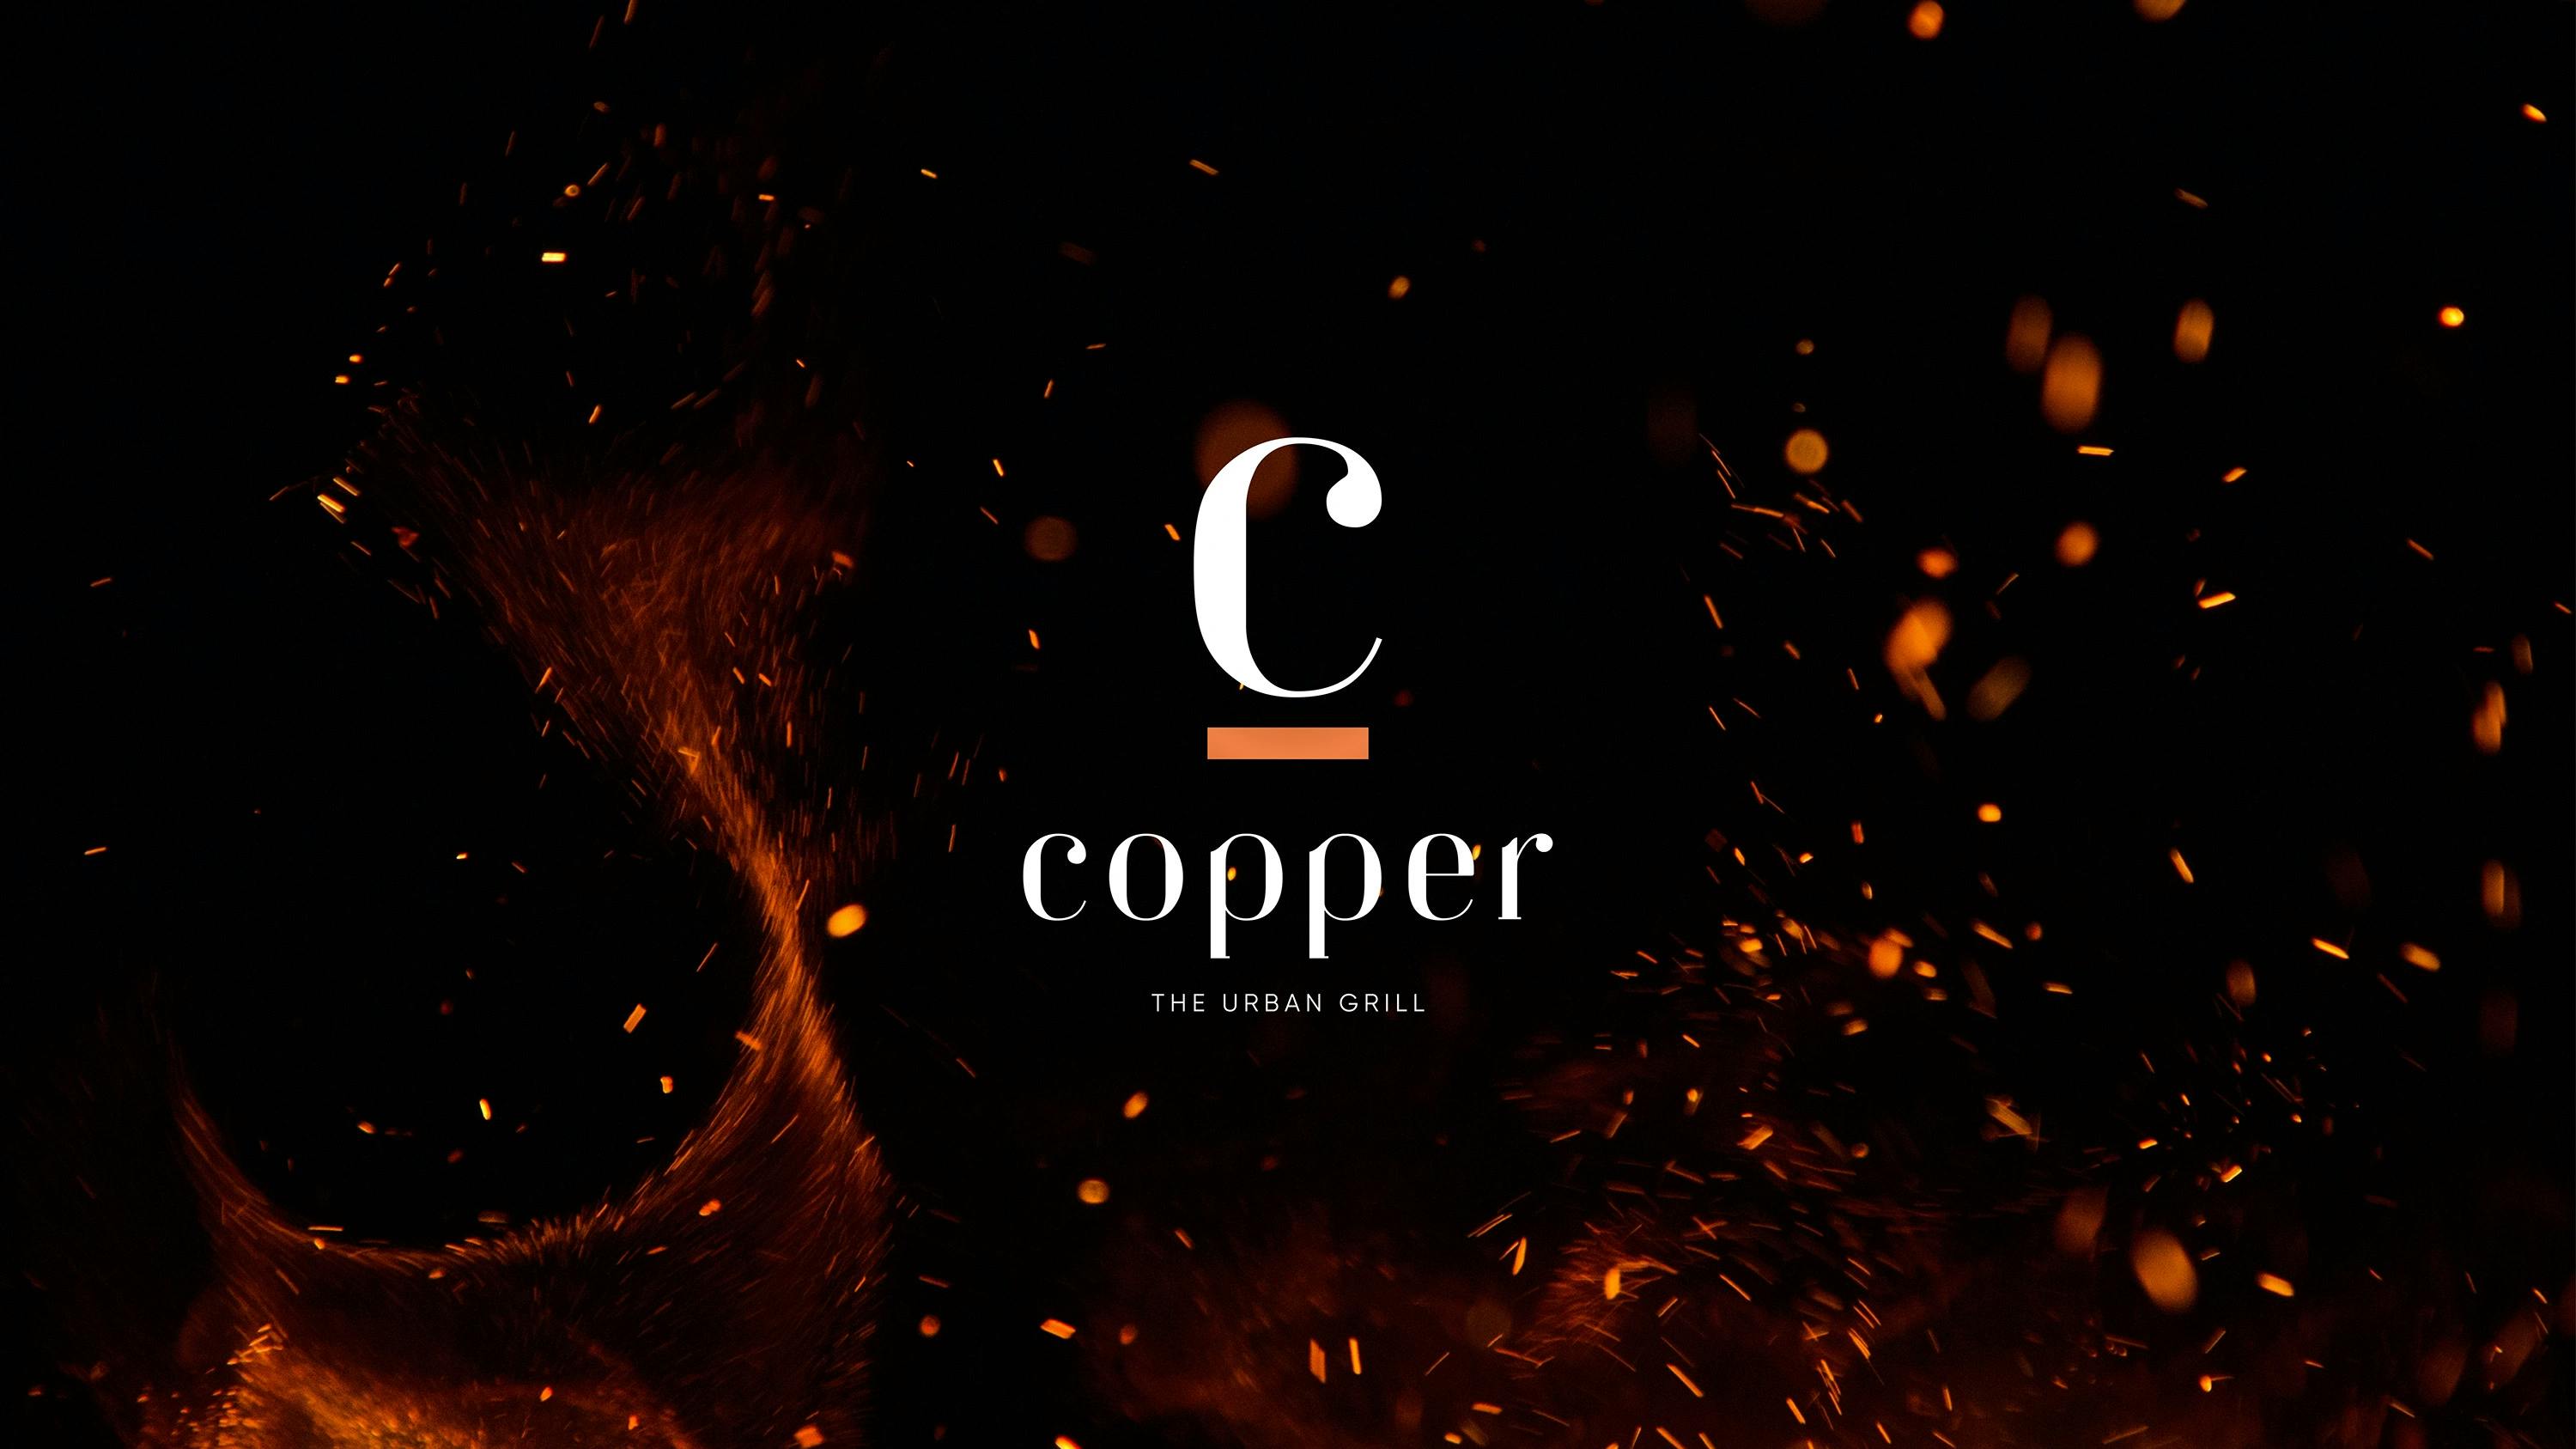 Copper, The Urban Grill